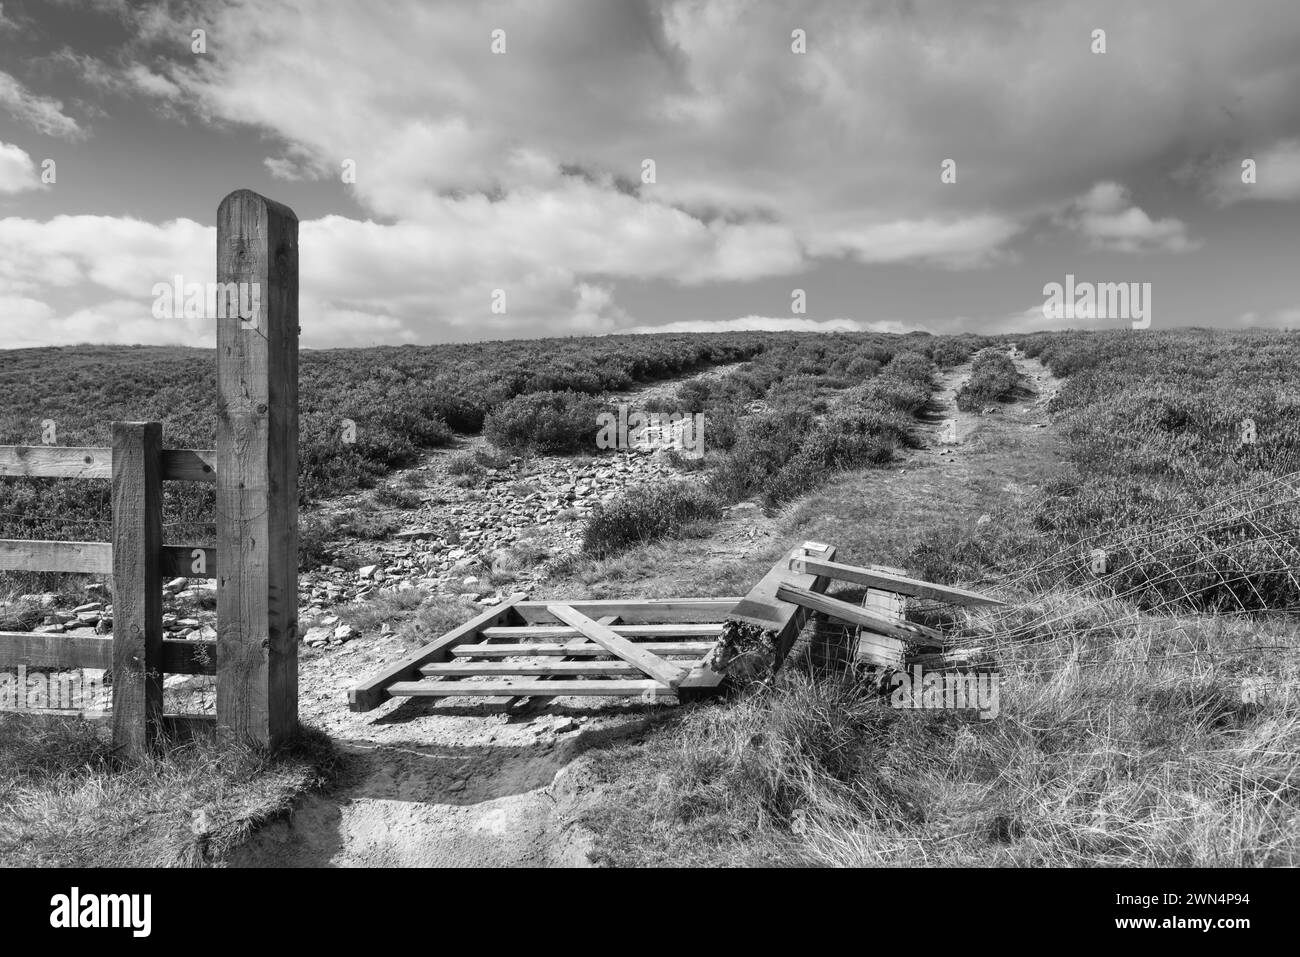 Cancello e recinzione rotti che conducono alla brughiera di heather sotto il cielo luminoso con nuvole in una bella mattinata senza persone vicino a Goathland, Yorkshire, Regno Unito. Foto Stock